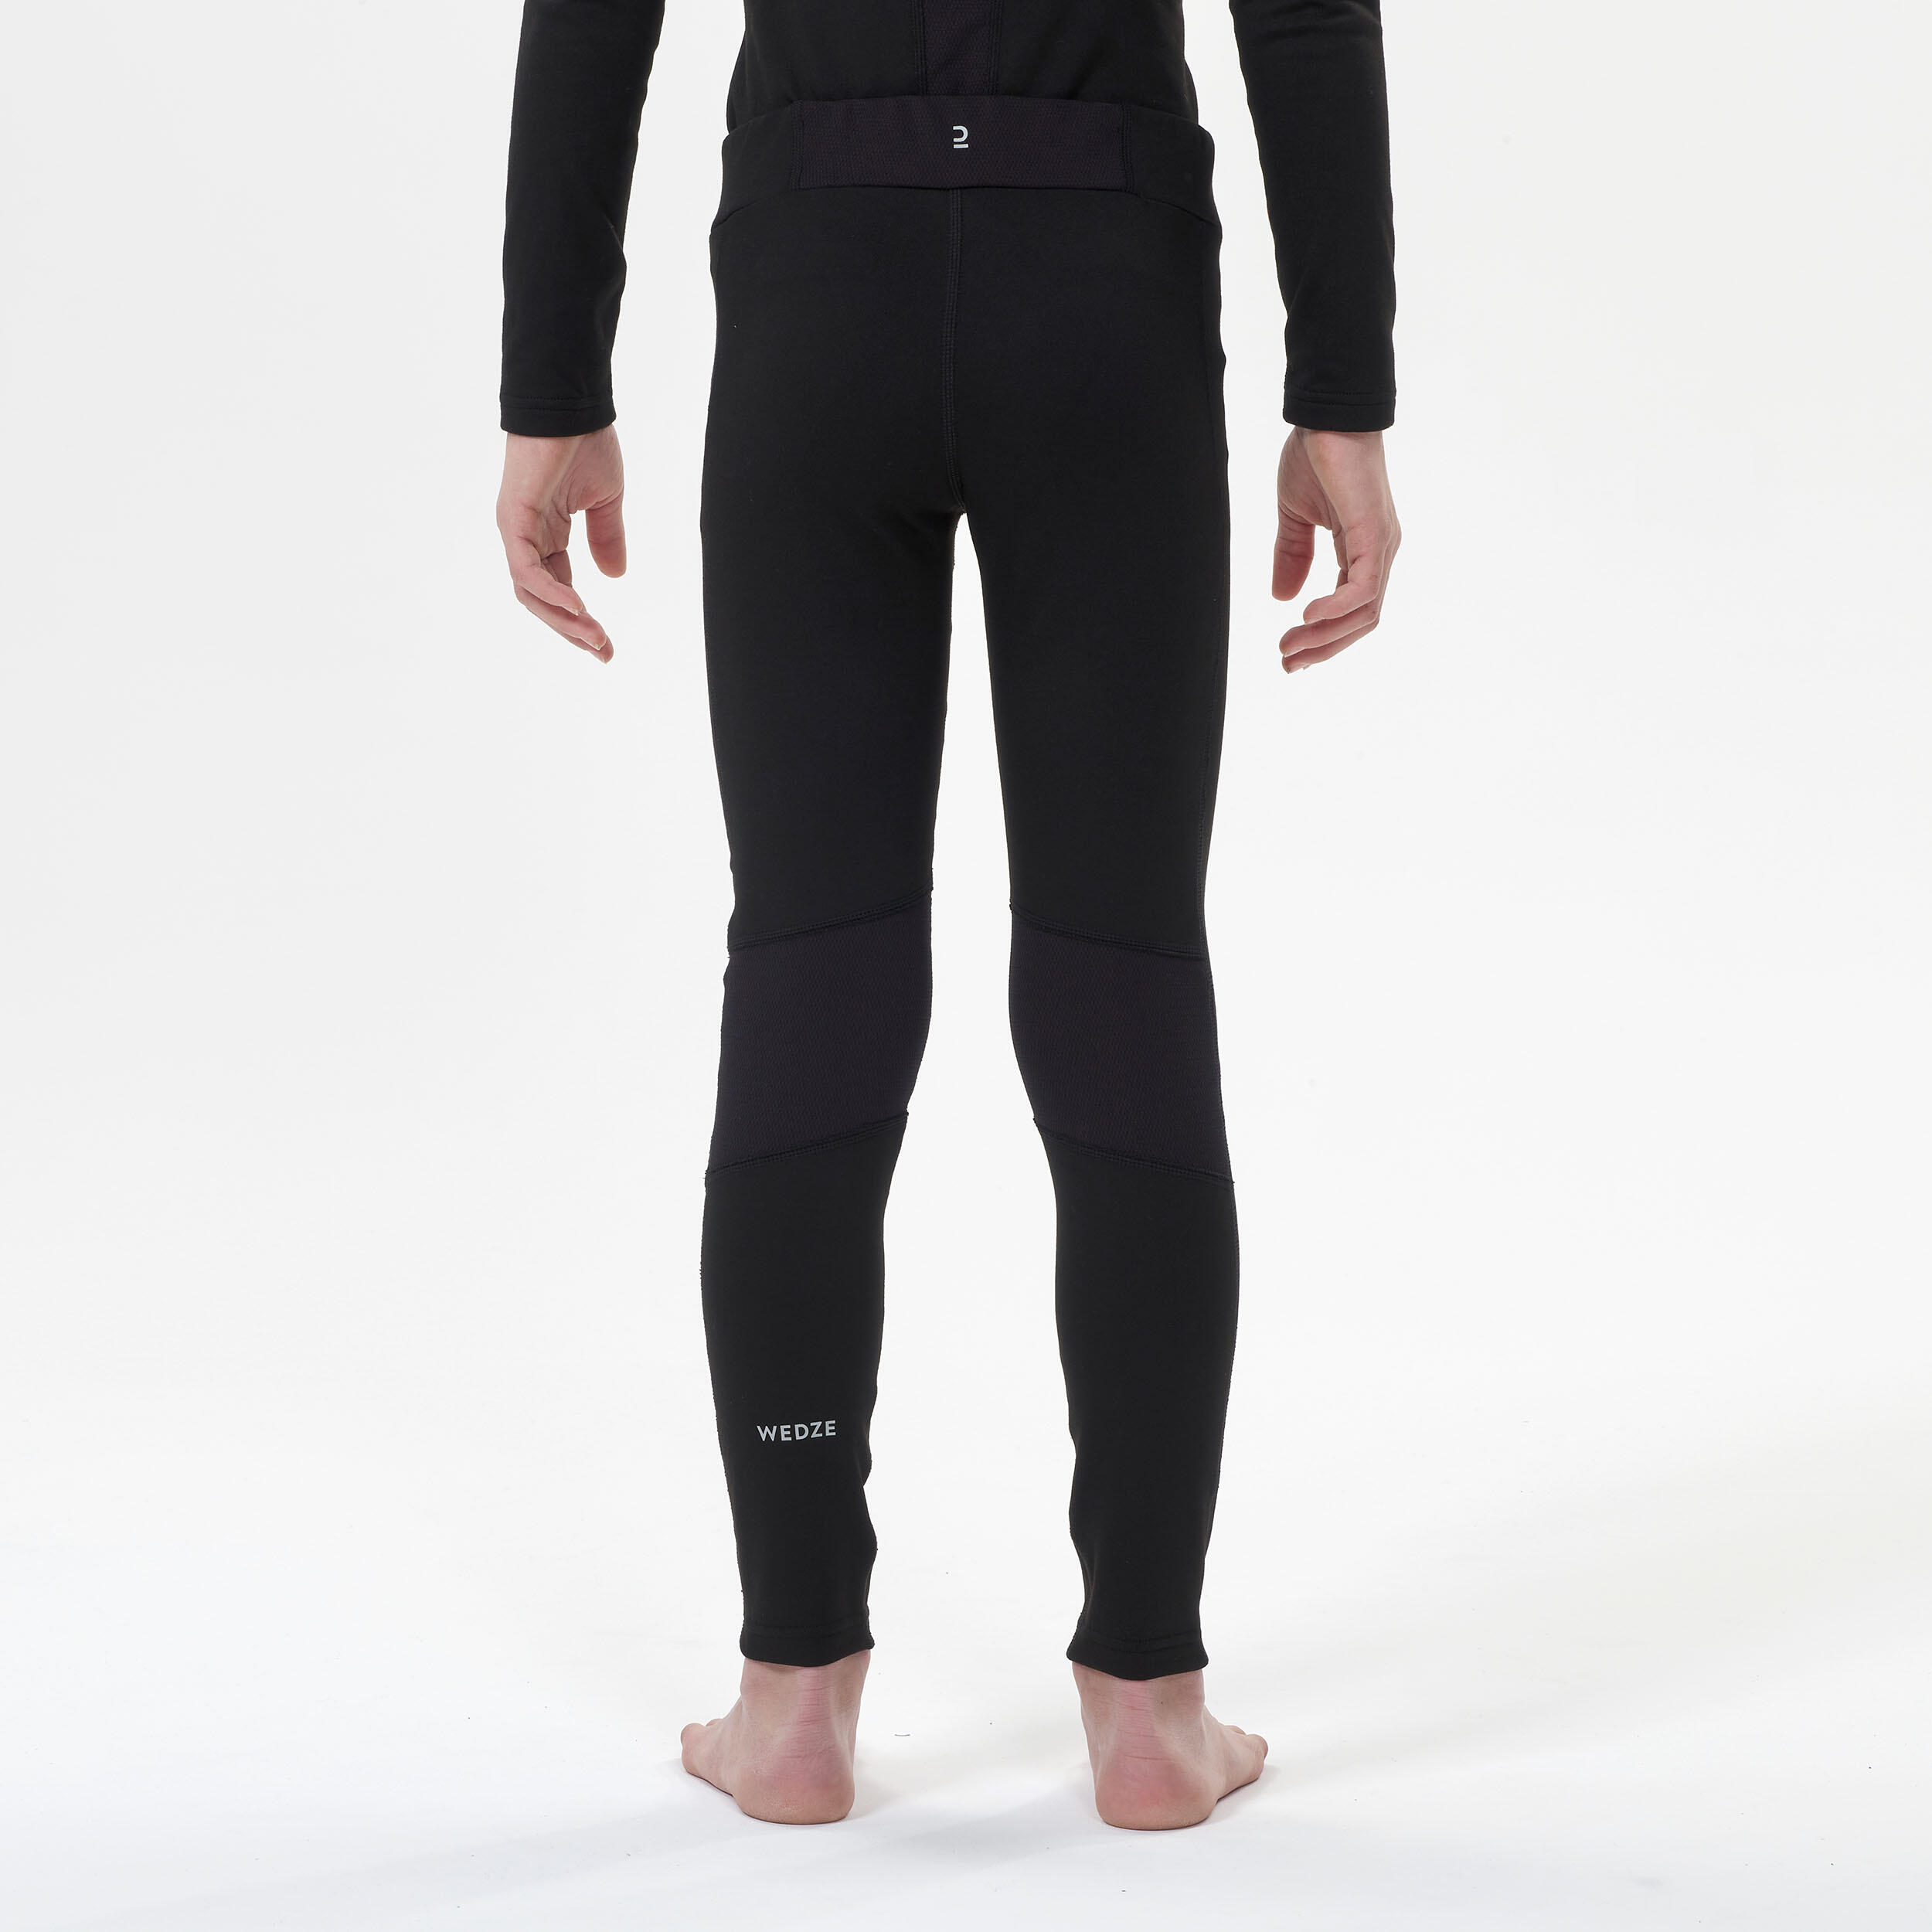 Kids’ thermal ski base layer trousers - BL 500 - black 4/7